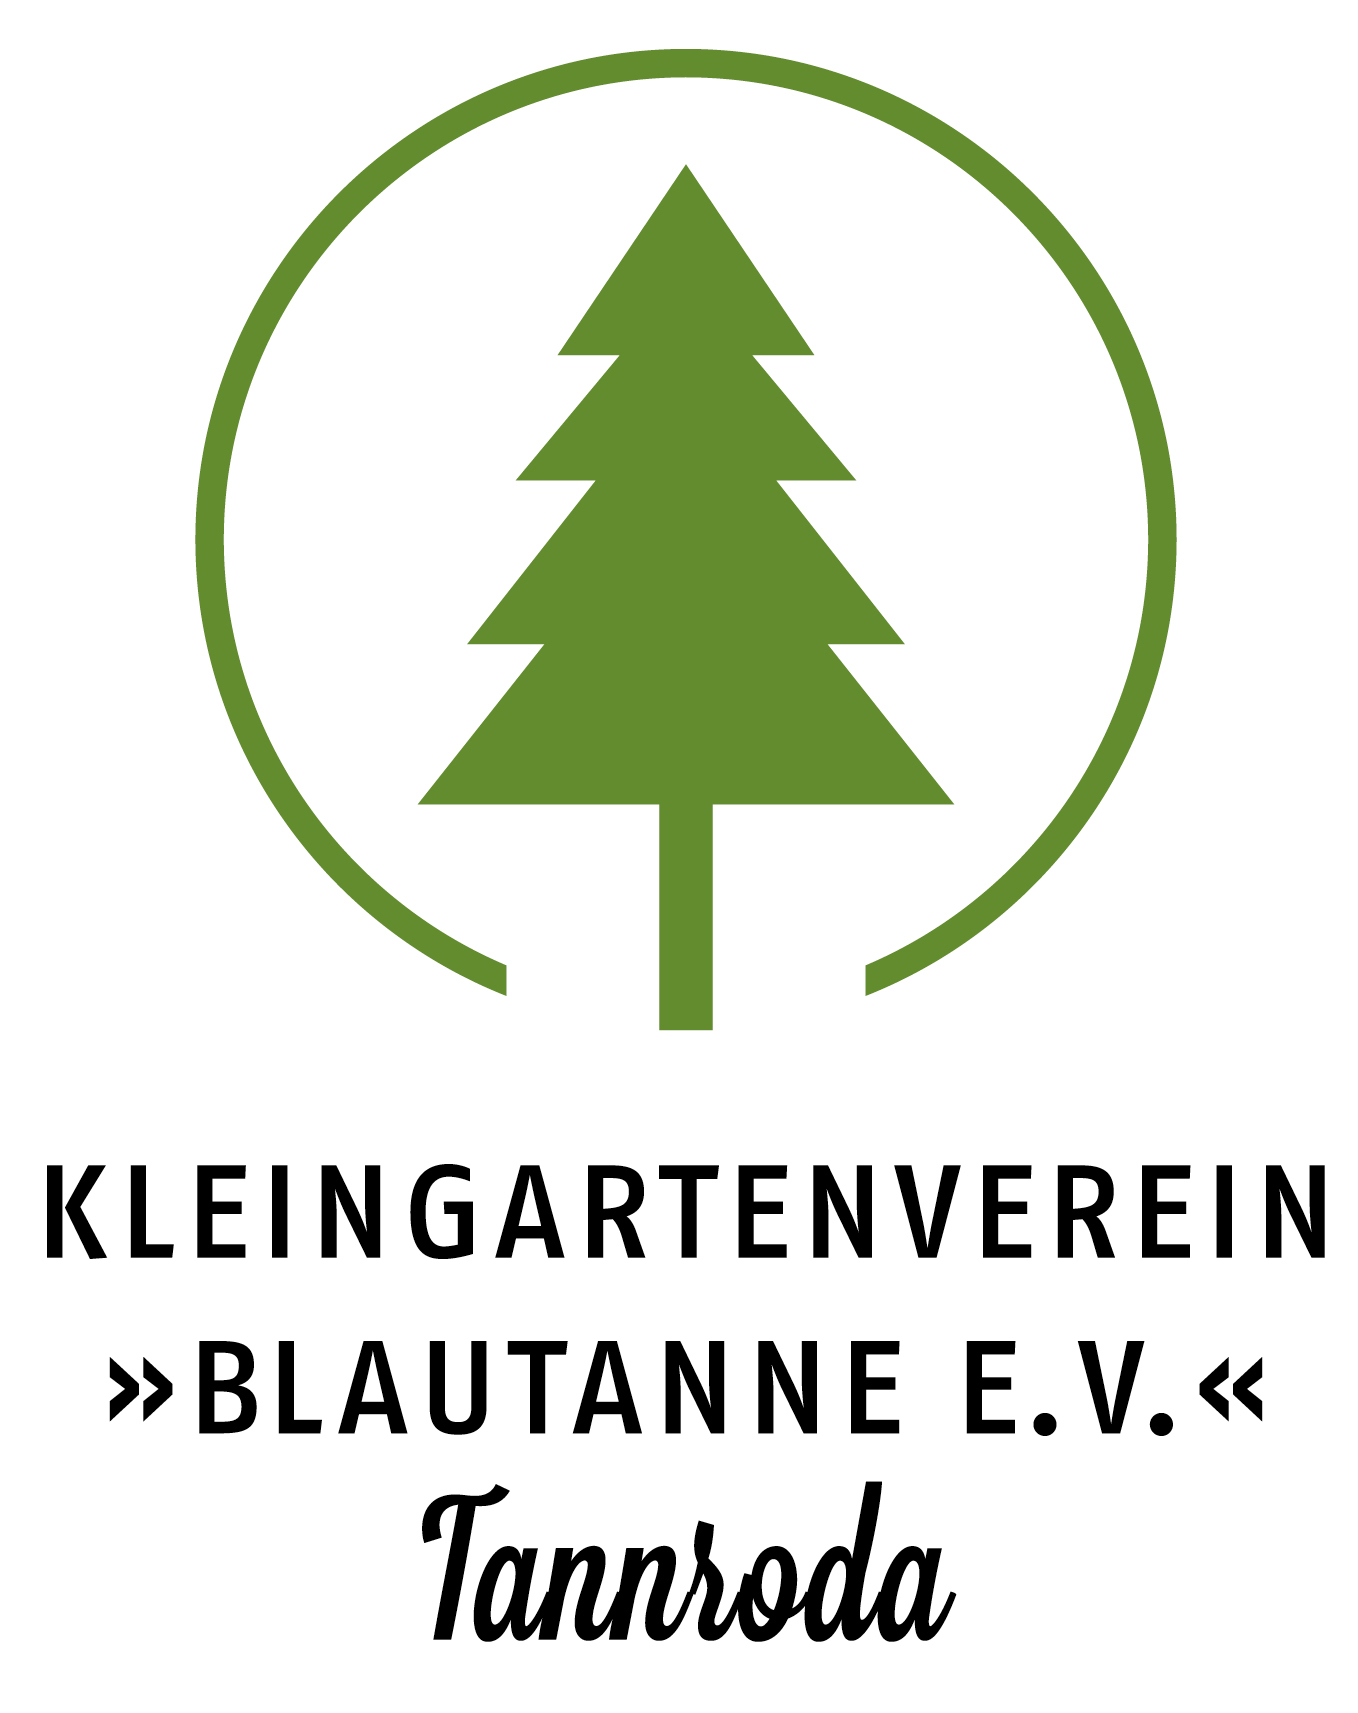 Kleingartenverein »Blautanne e.V.« Tannroda